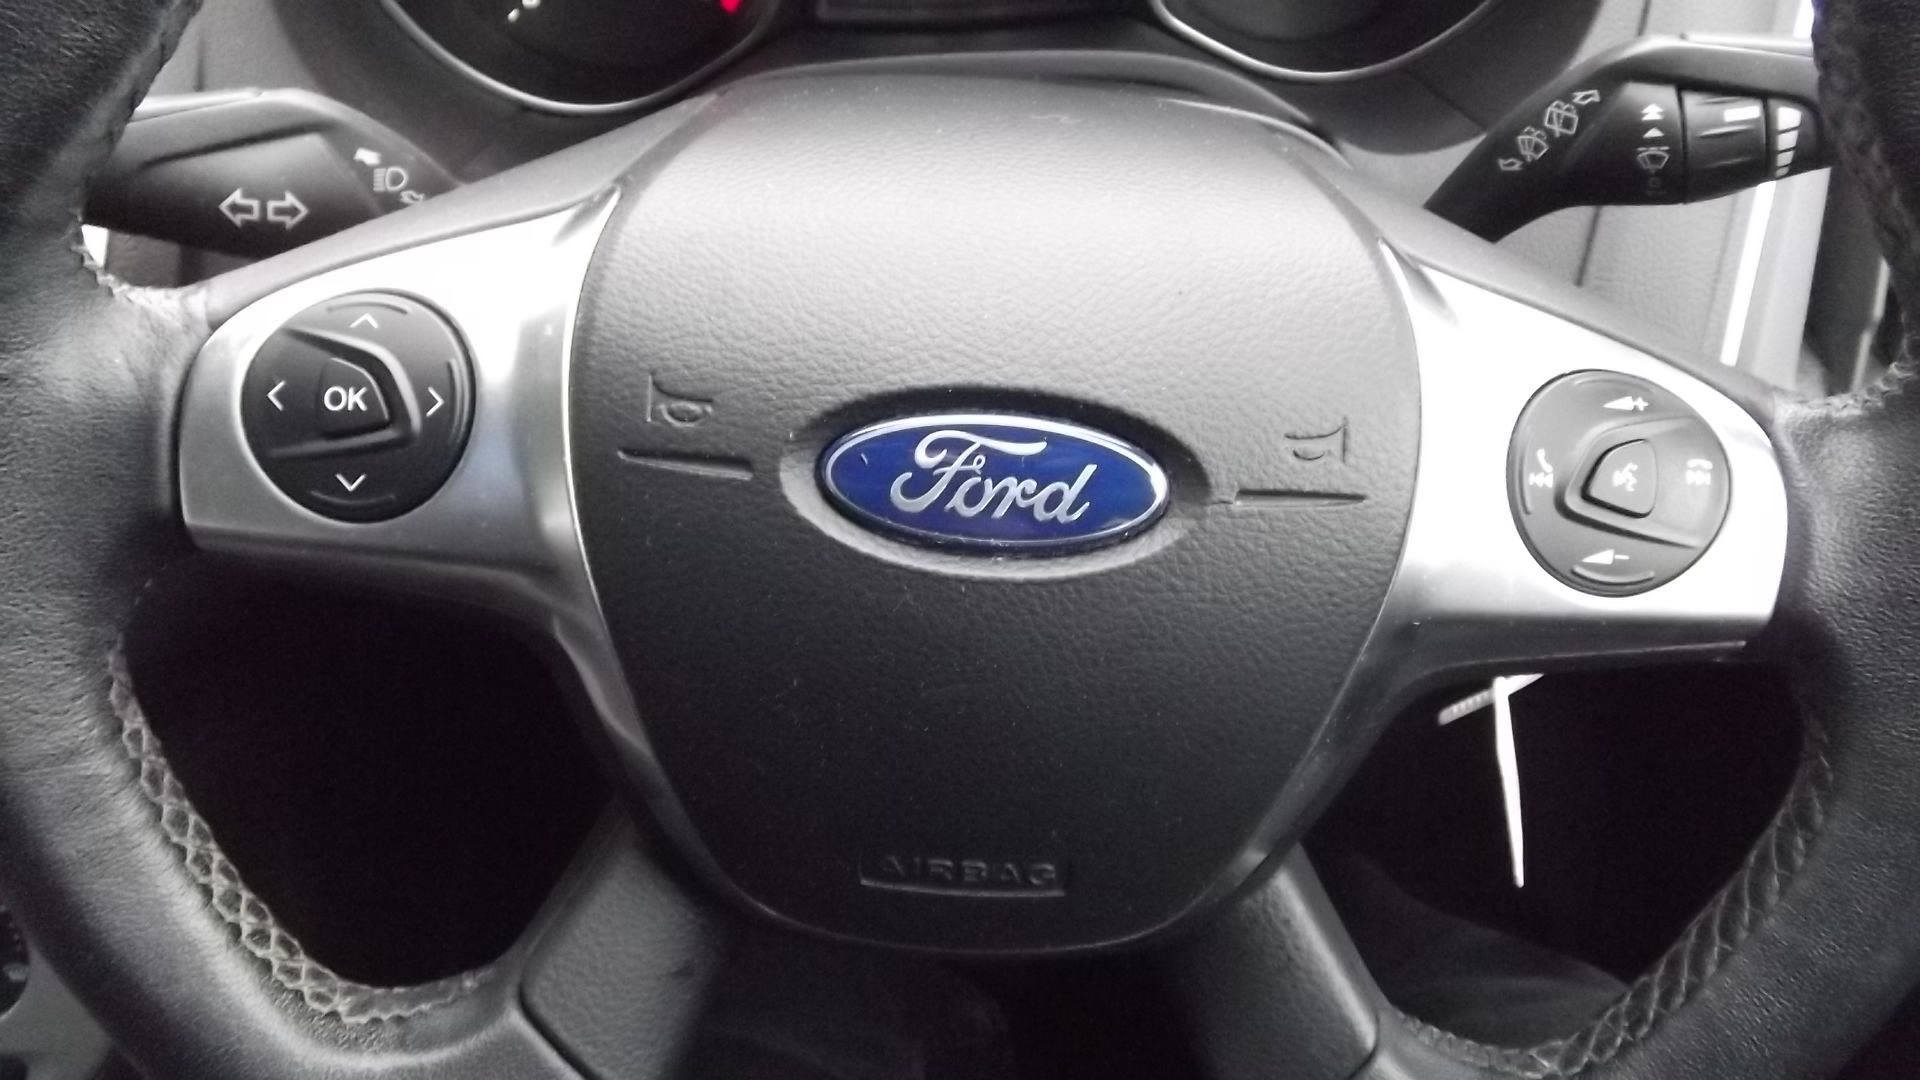 2013 Ford Focus 1.6 TDCi 115 Zetec 5dr Hatchback - Full Service History - CL505 - NO VAT ON THE HAMM - Image 4 of 21